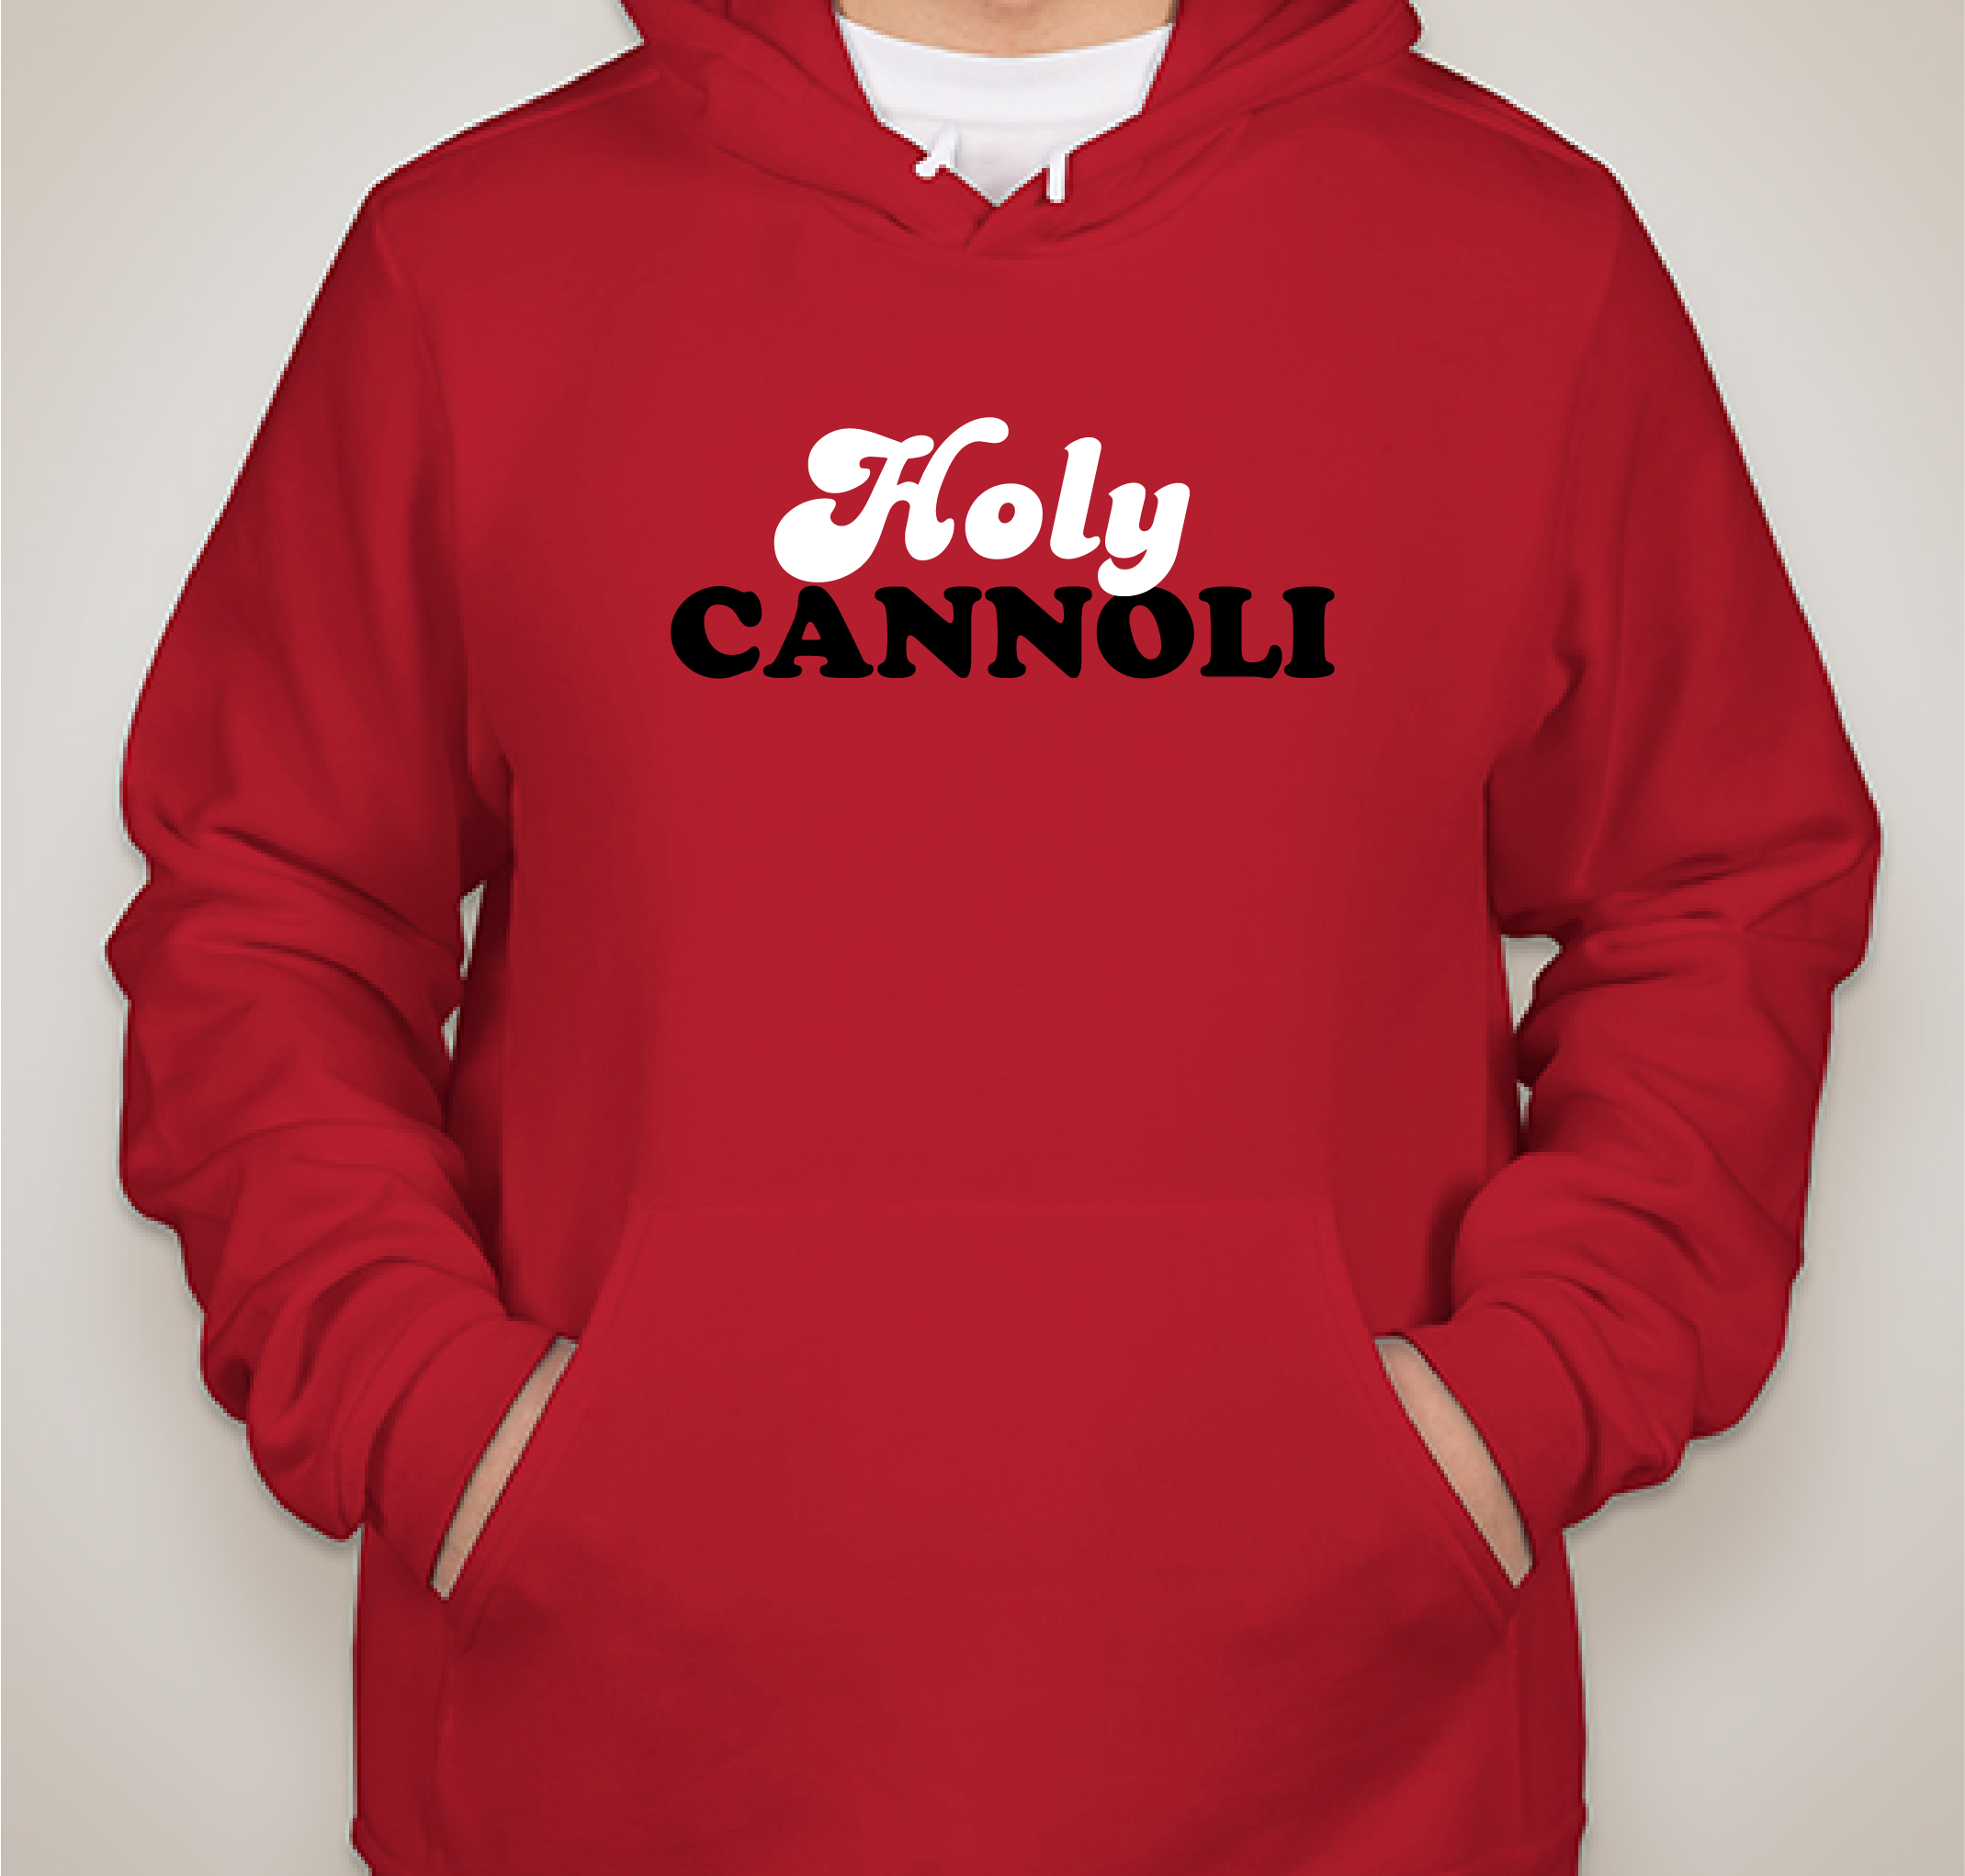 Holy Cannoli SHIRTS! Fundraiser - unisex shirt design - front